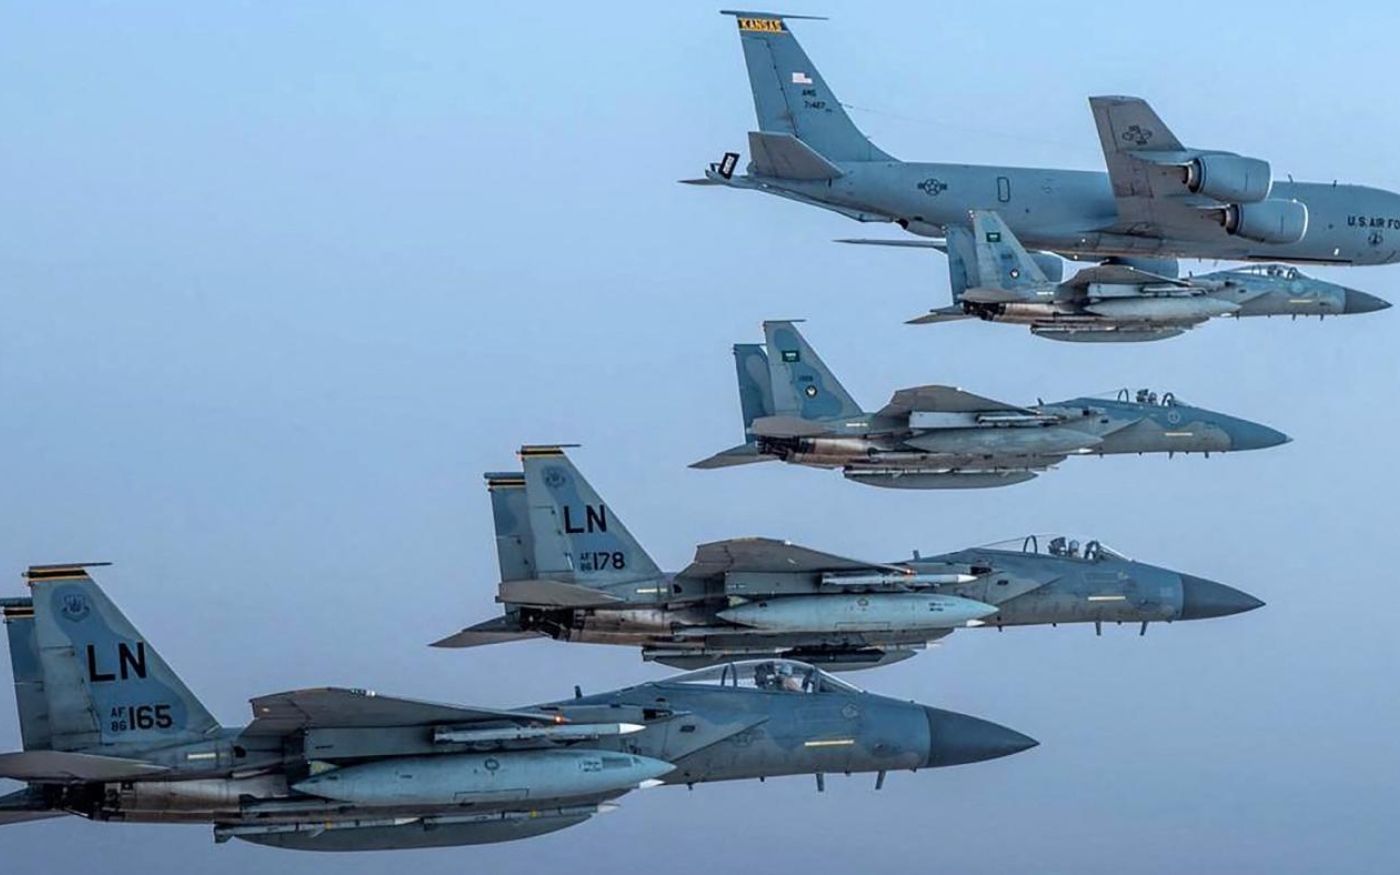 Des avions de chasse saoudiens F-15 volent en formation avec des avions de l’US Air Force, le 2 juin 2019 (AFP)